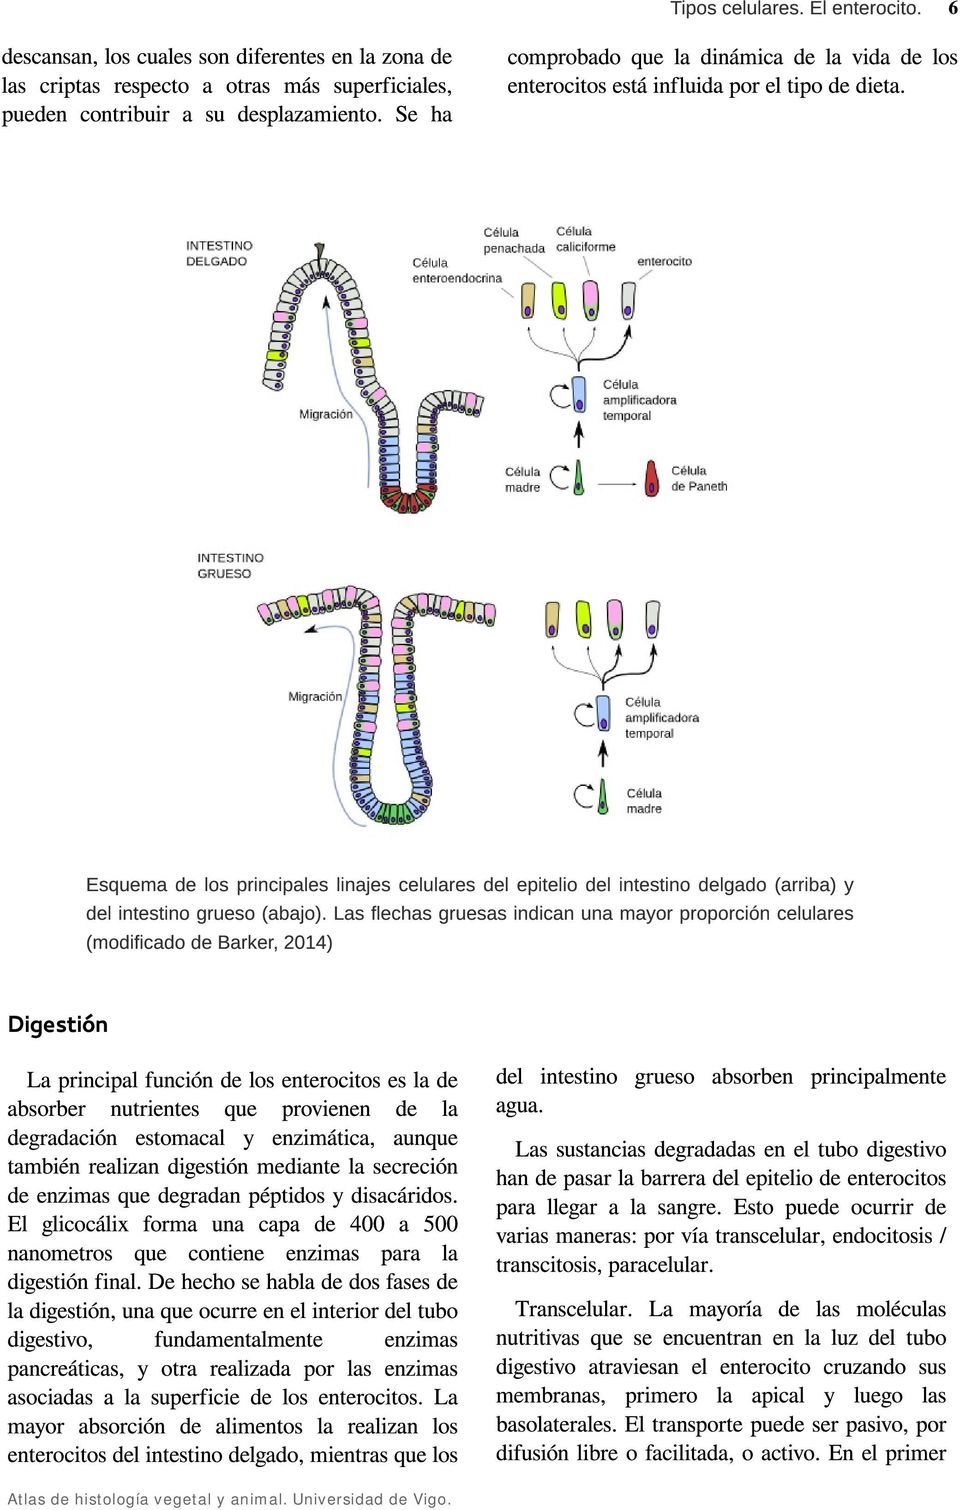 Esquema de los principales linajes celulares del epitelio del intestino delgado (arriba) y del intestino grueso (abajo).